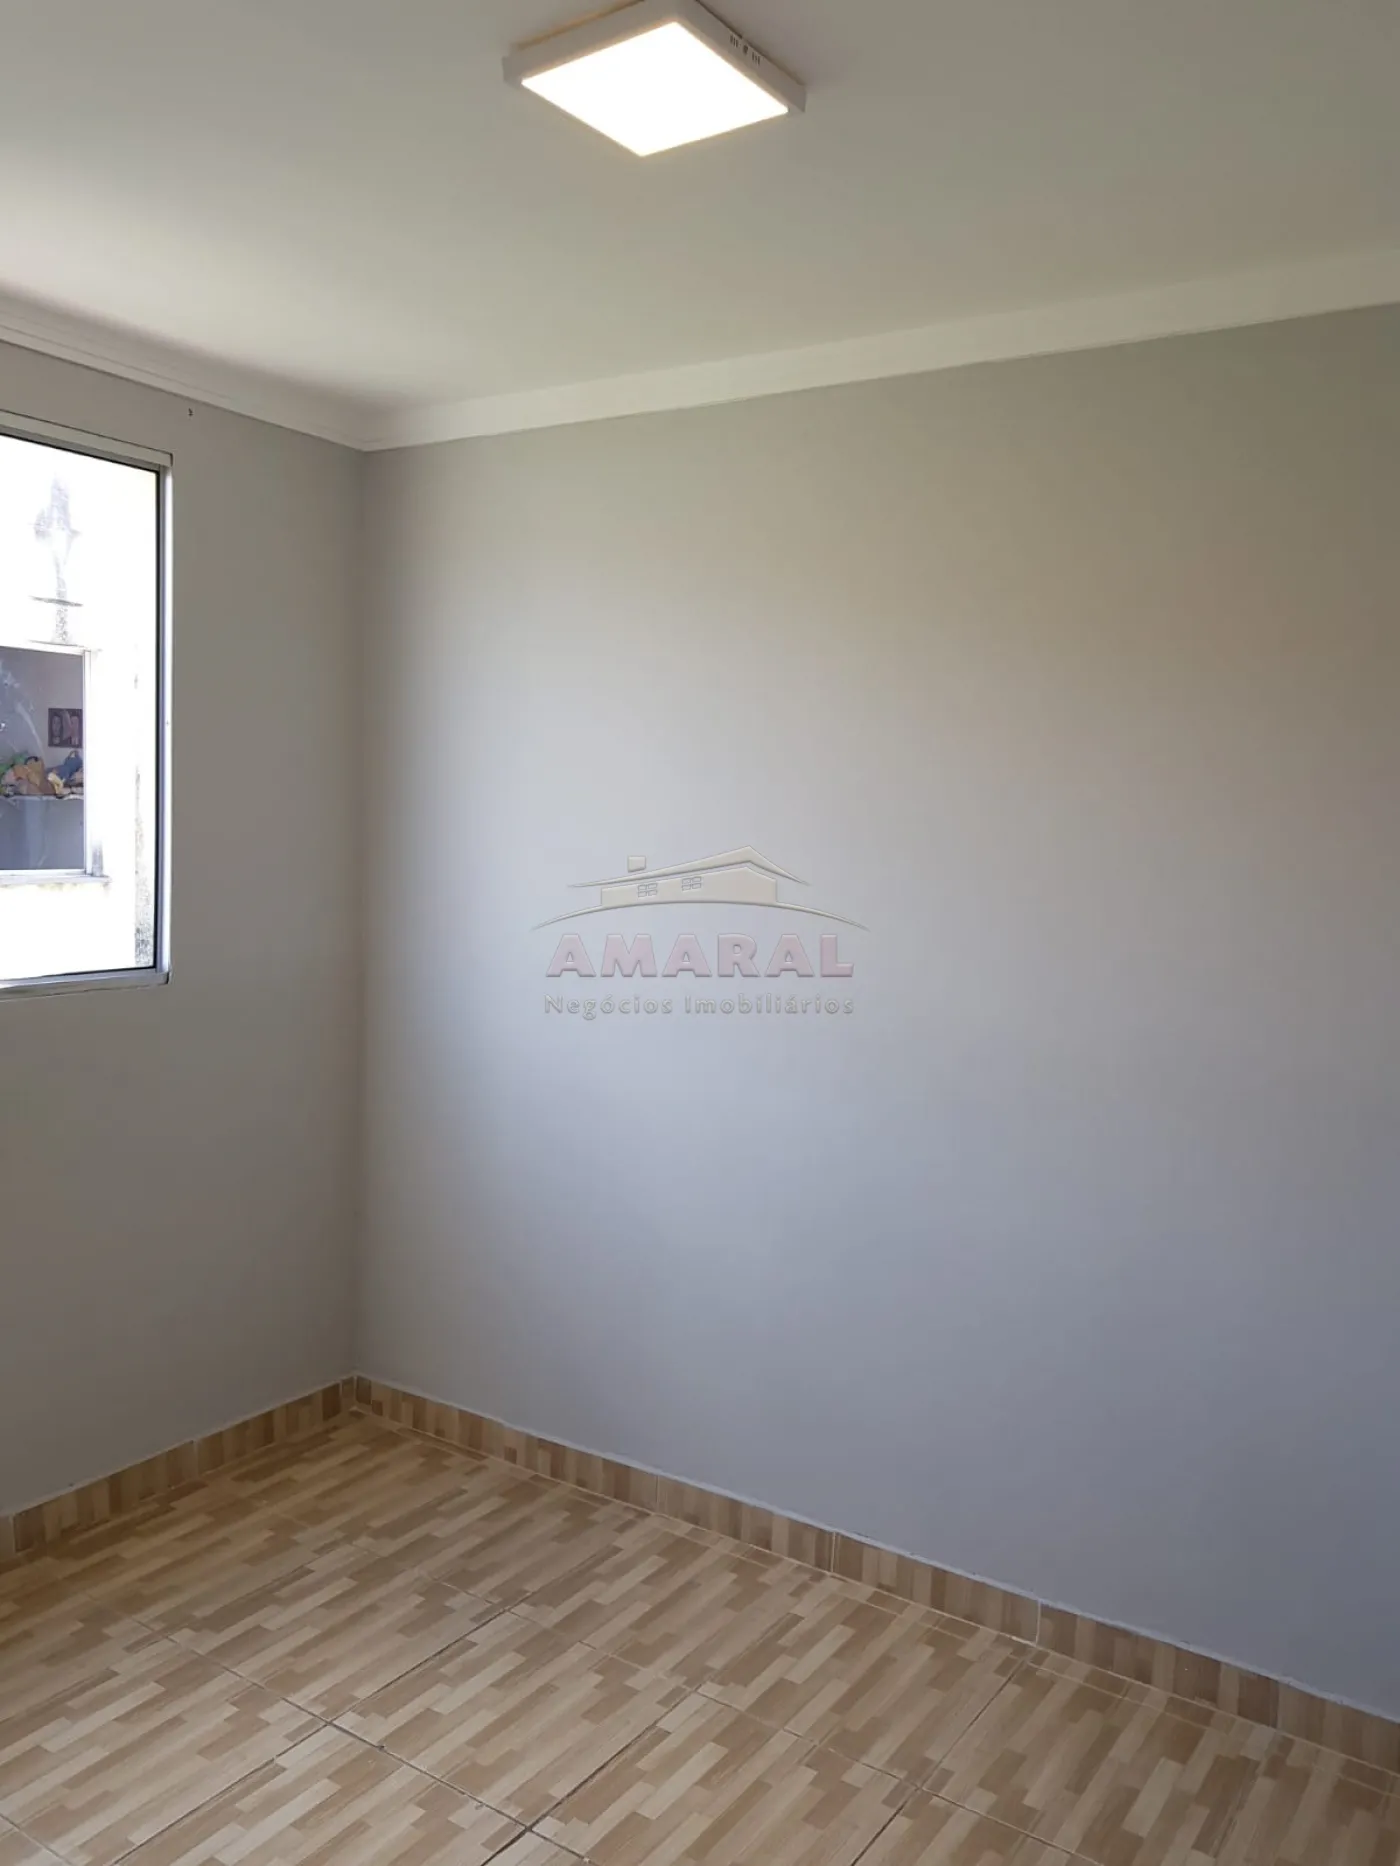 Comprar Casas / Condomínio em Ferraz de Vasconcelos R$ 210.000,00 - Foto 10